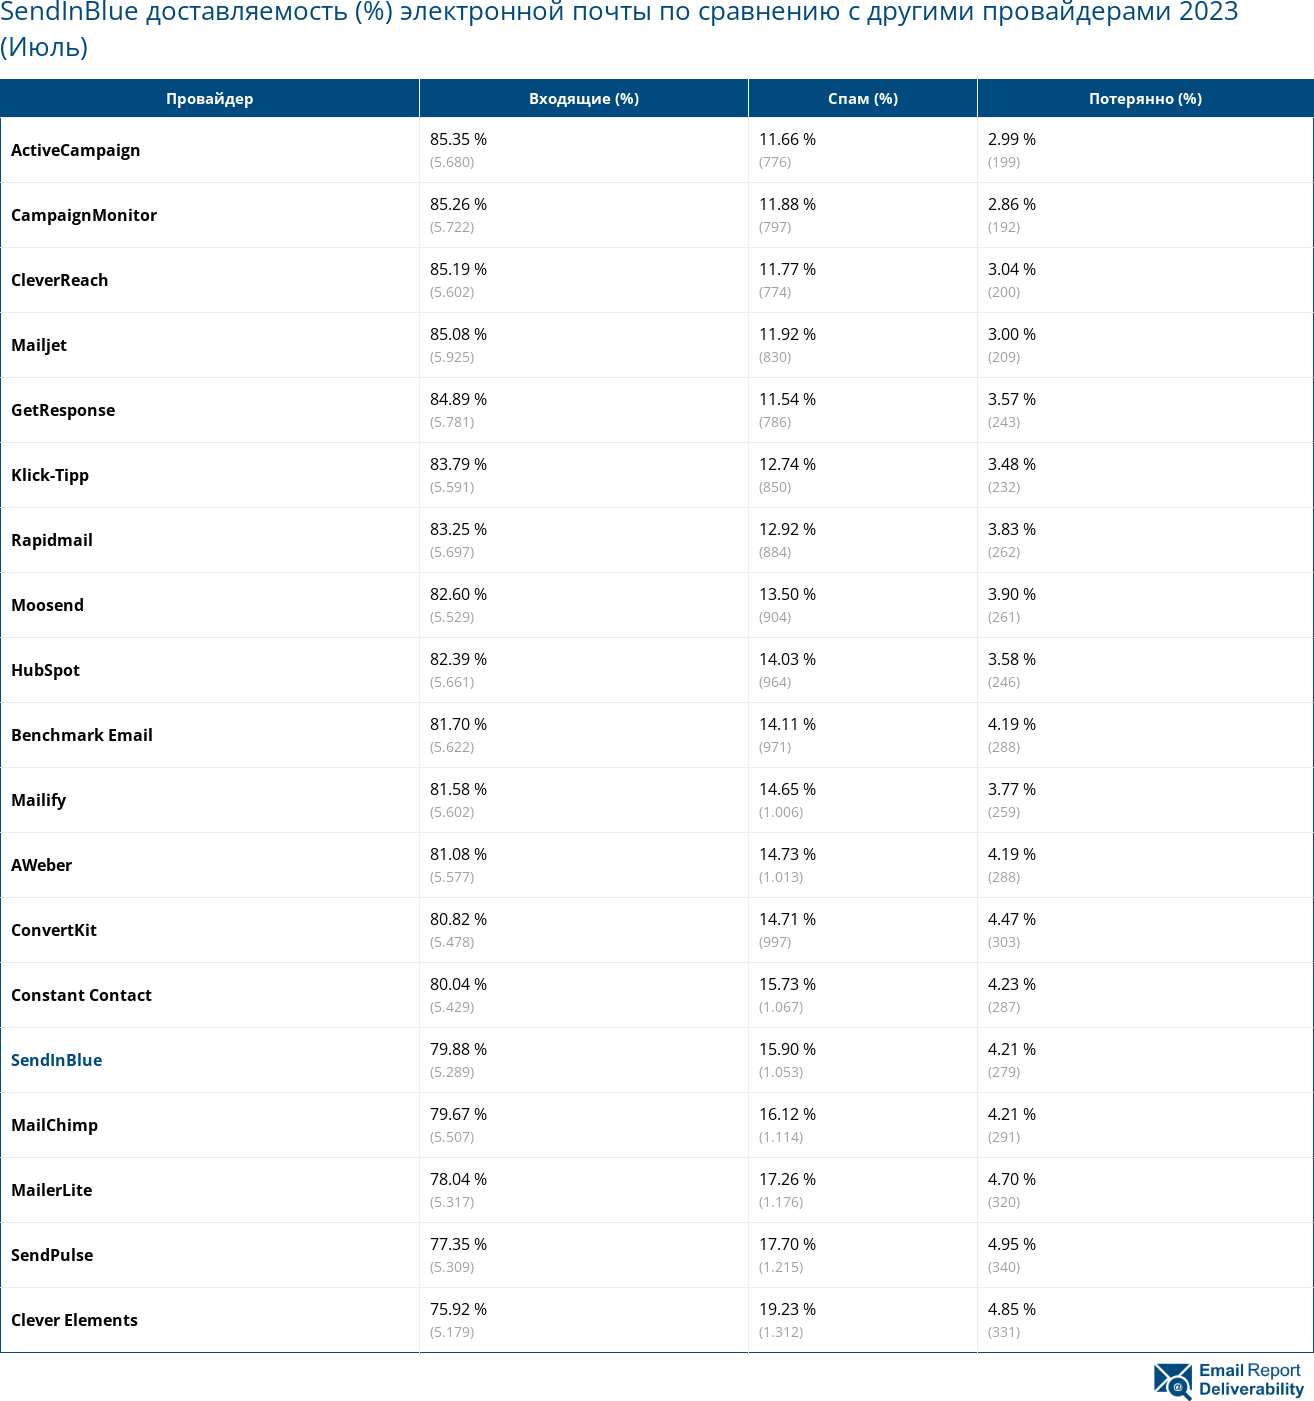 SendInBlue доставляемость (%) электронной почты по сравнению с другими провайдерами 2023 (Июль)